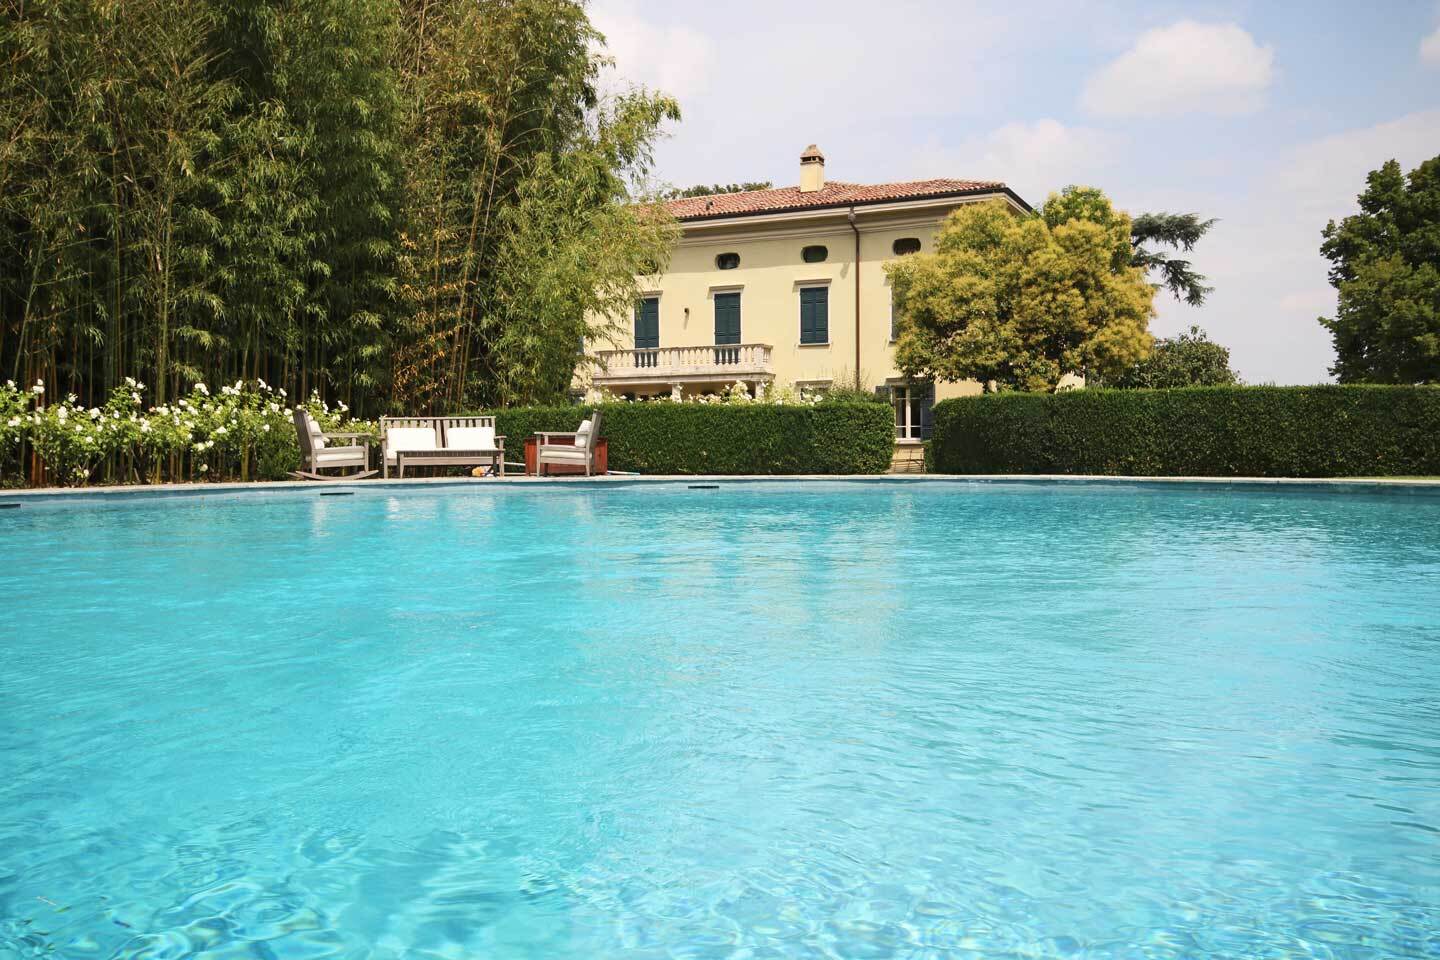 For sale villa in quiet zone Collecchio Emilia-Romagna